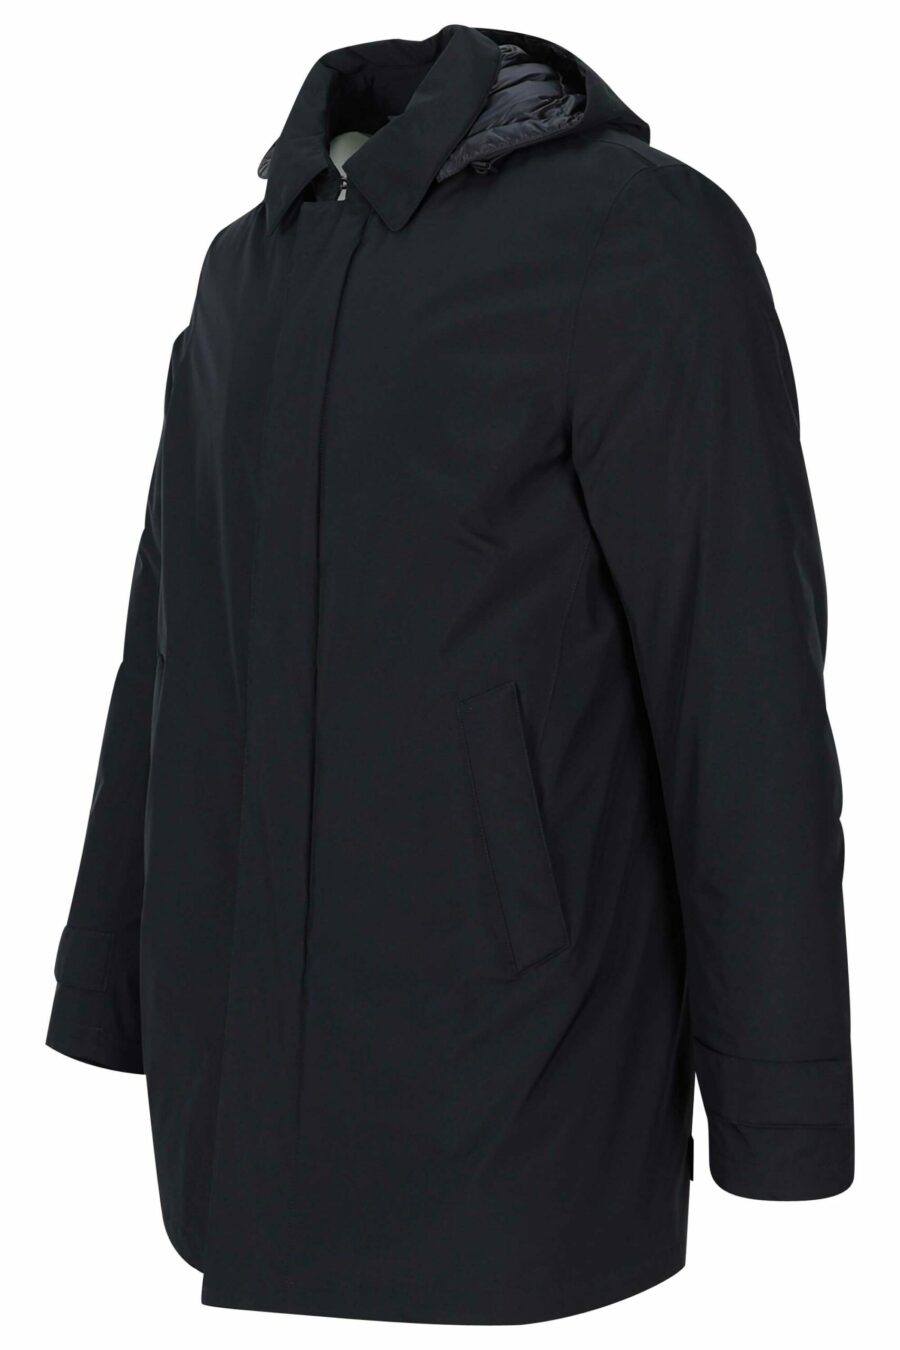 Veste noire "Gore tex" avec capuche amovible - 8055721631509 1 2 scaled